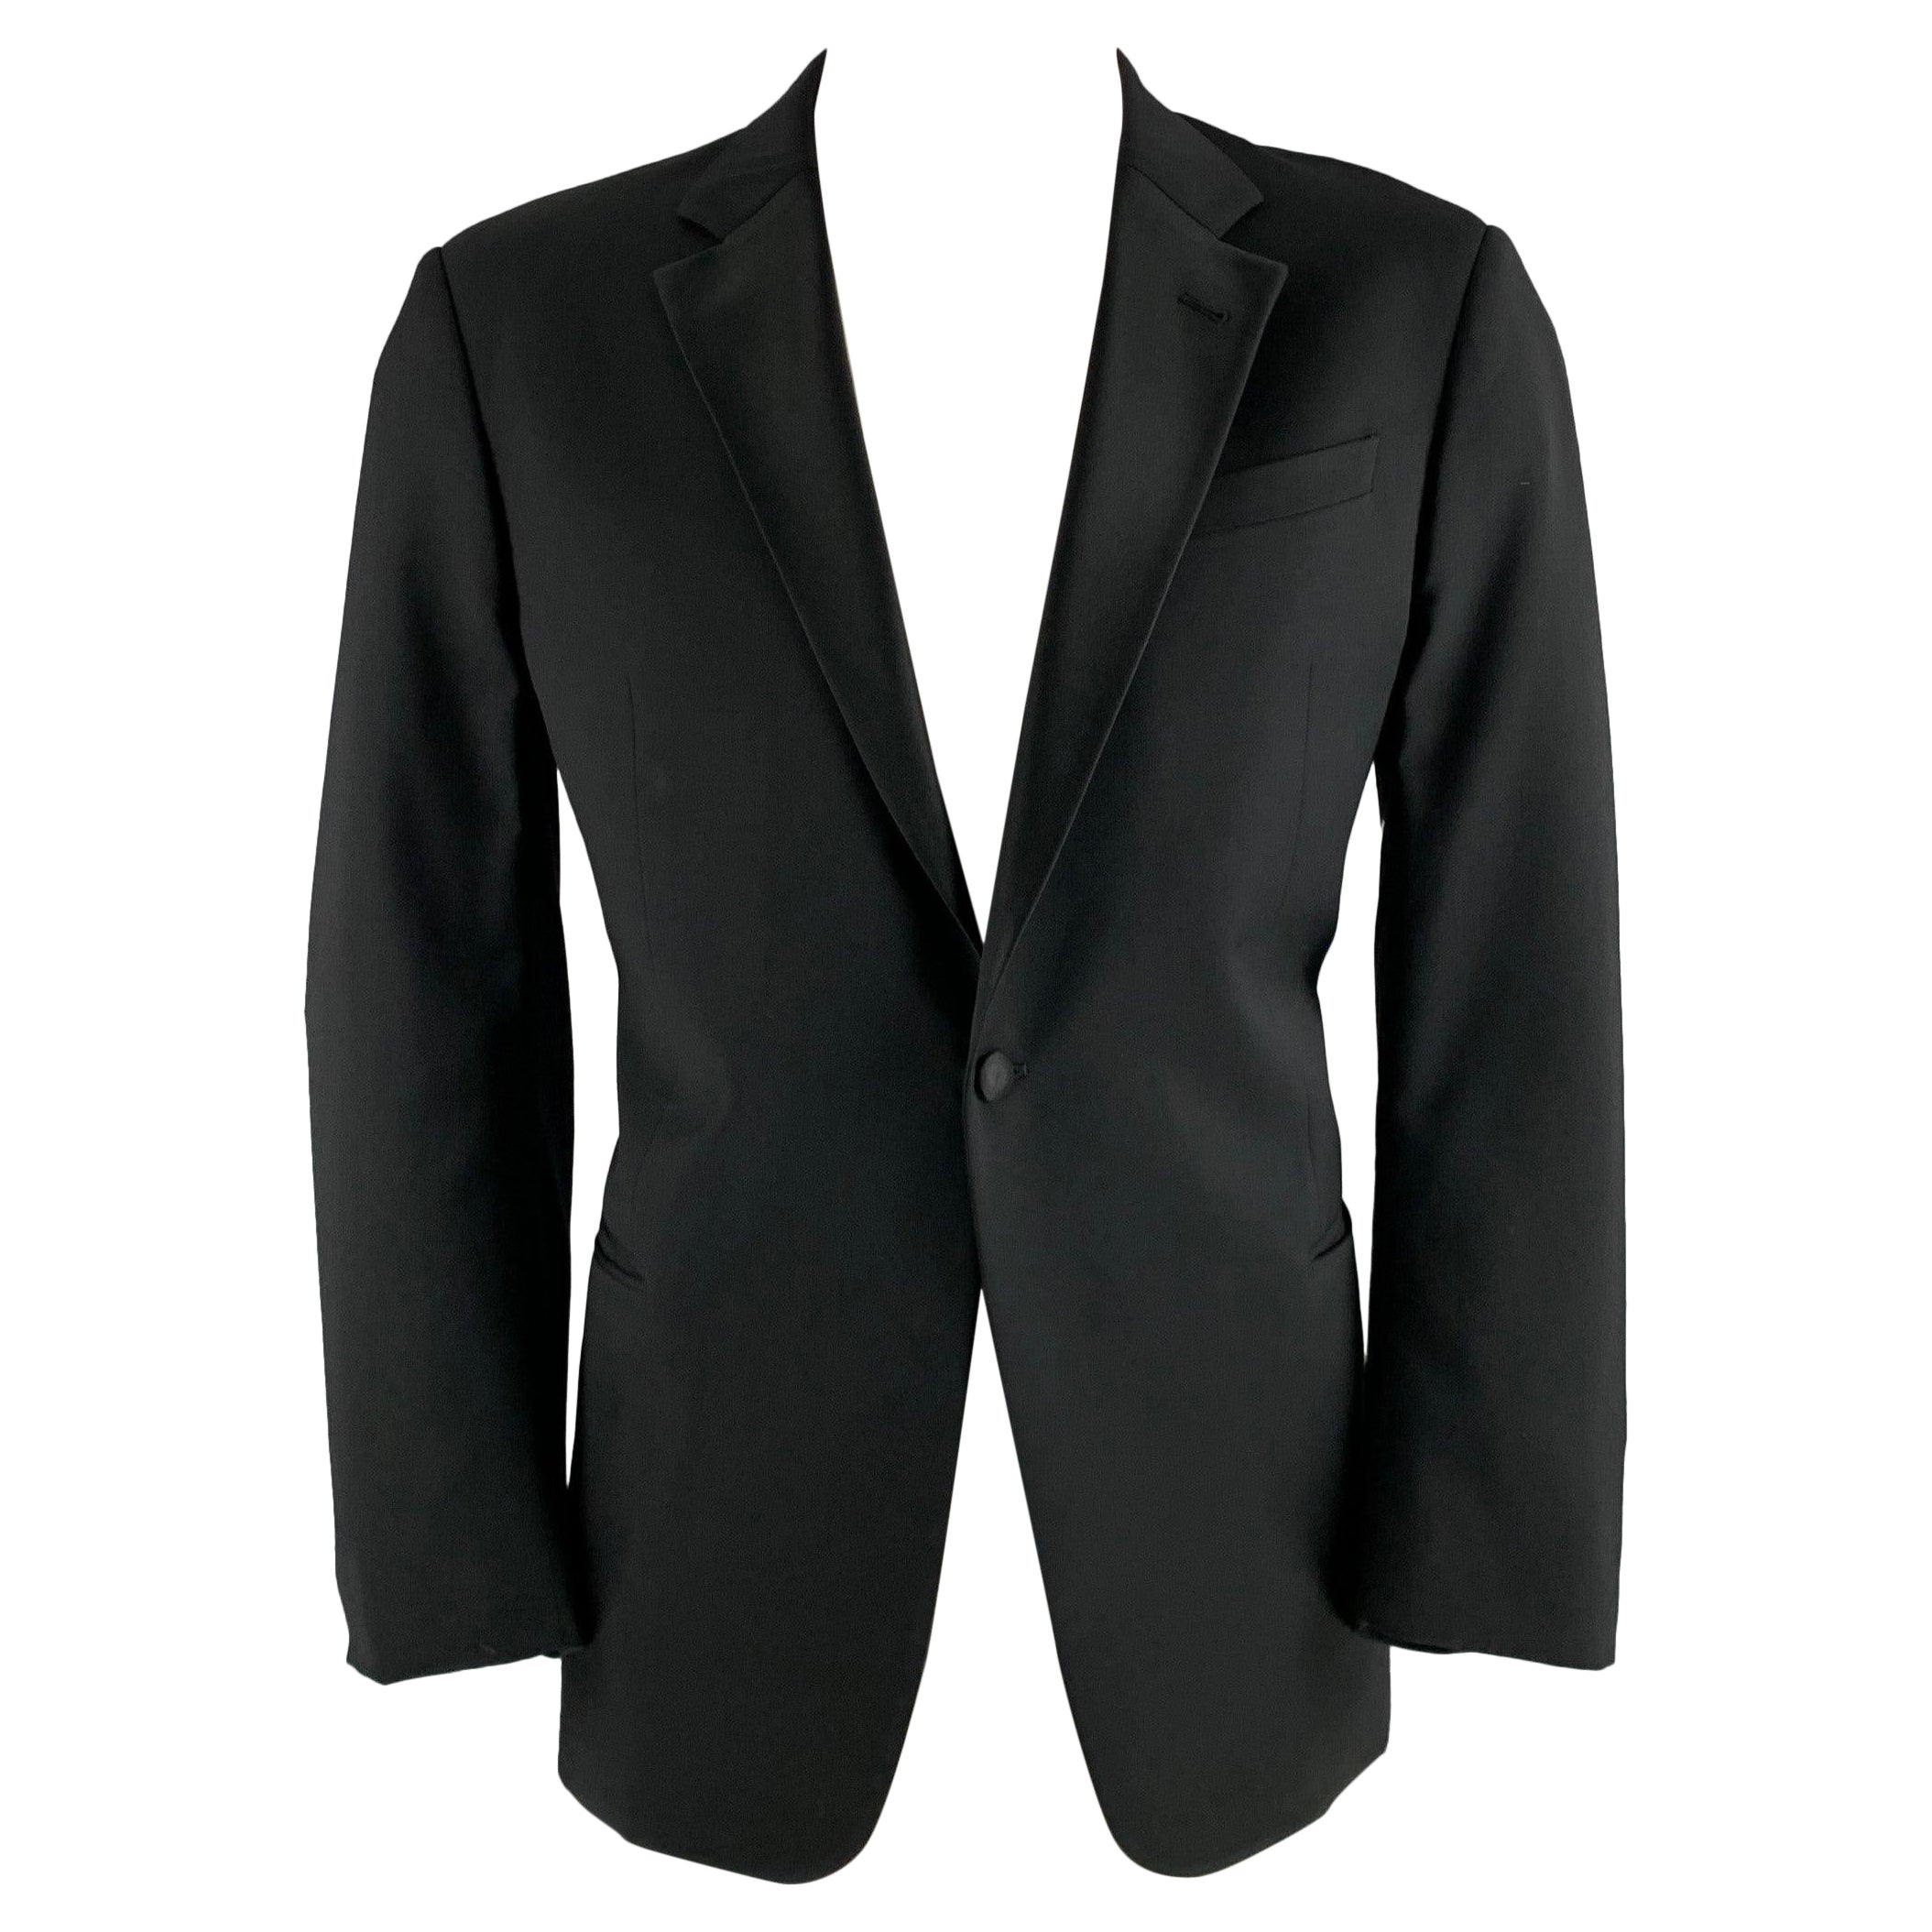 ARMANI COLLEZIONI Size 44 Black Solid Wool Tuxedo Sport Coat For Sale